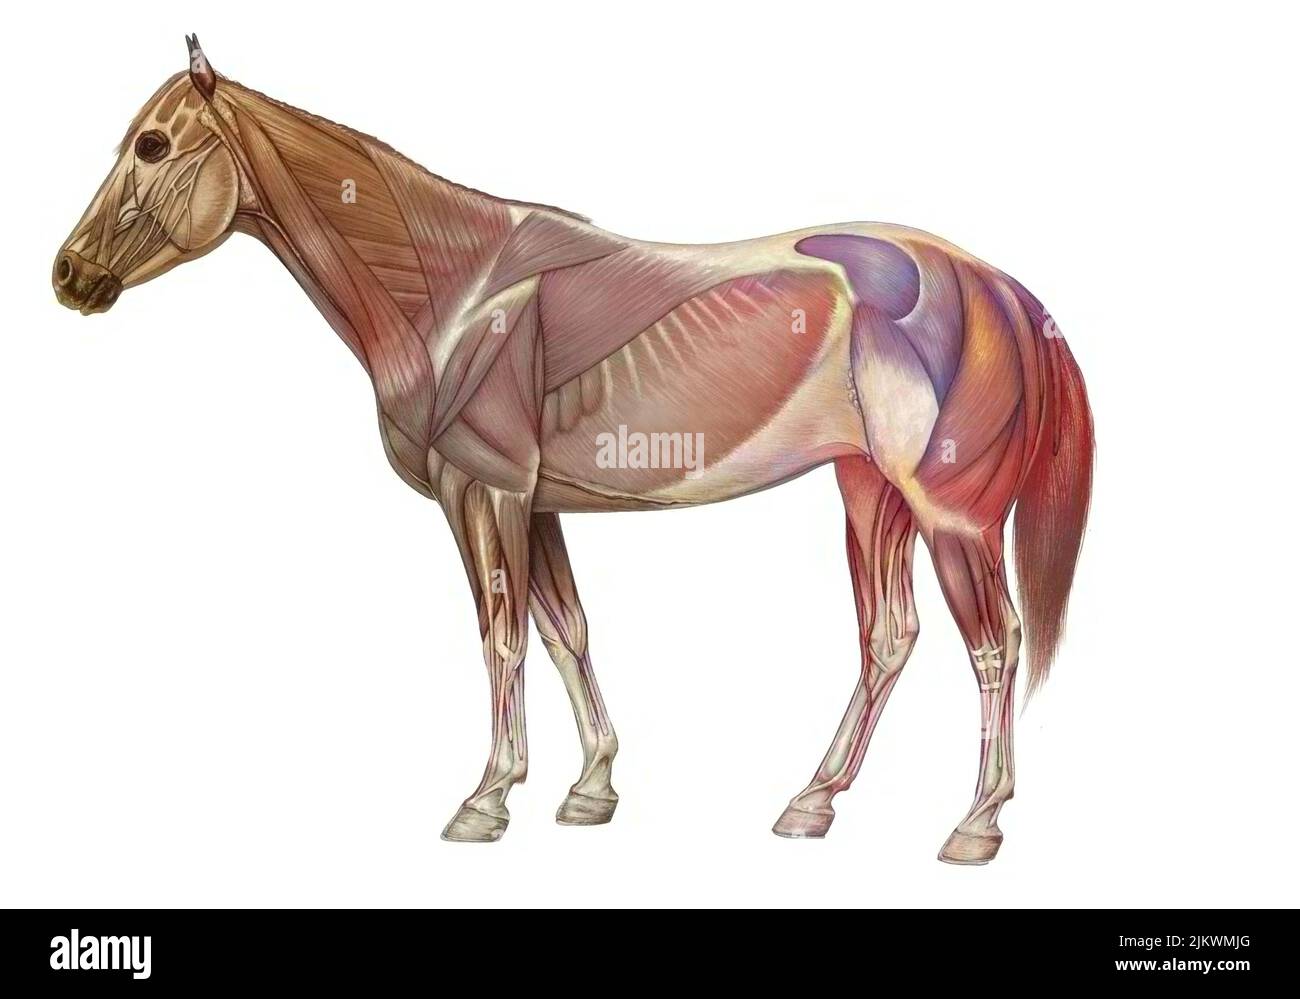 Anatomie des Pferdes mit seinem Muskelsystem. Stockfoto